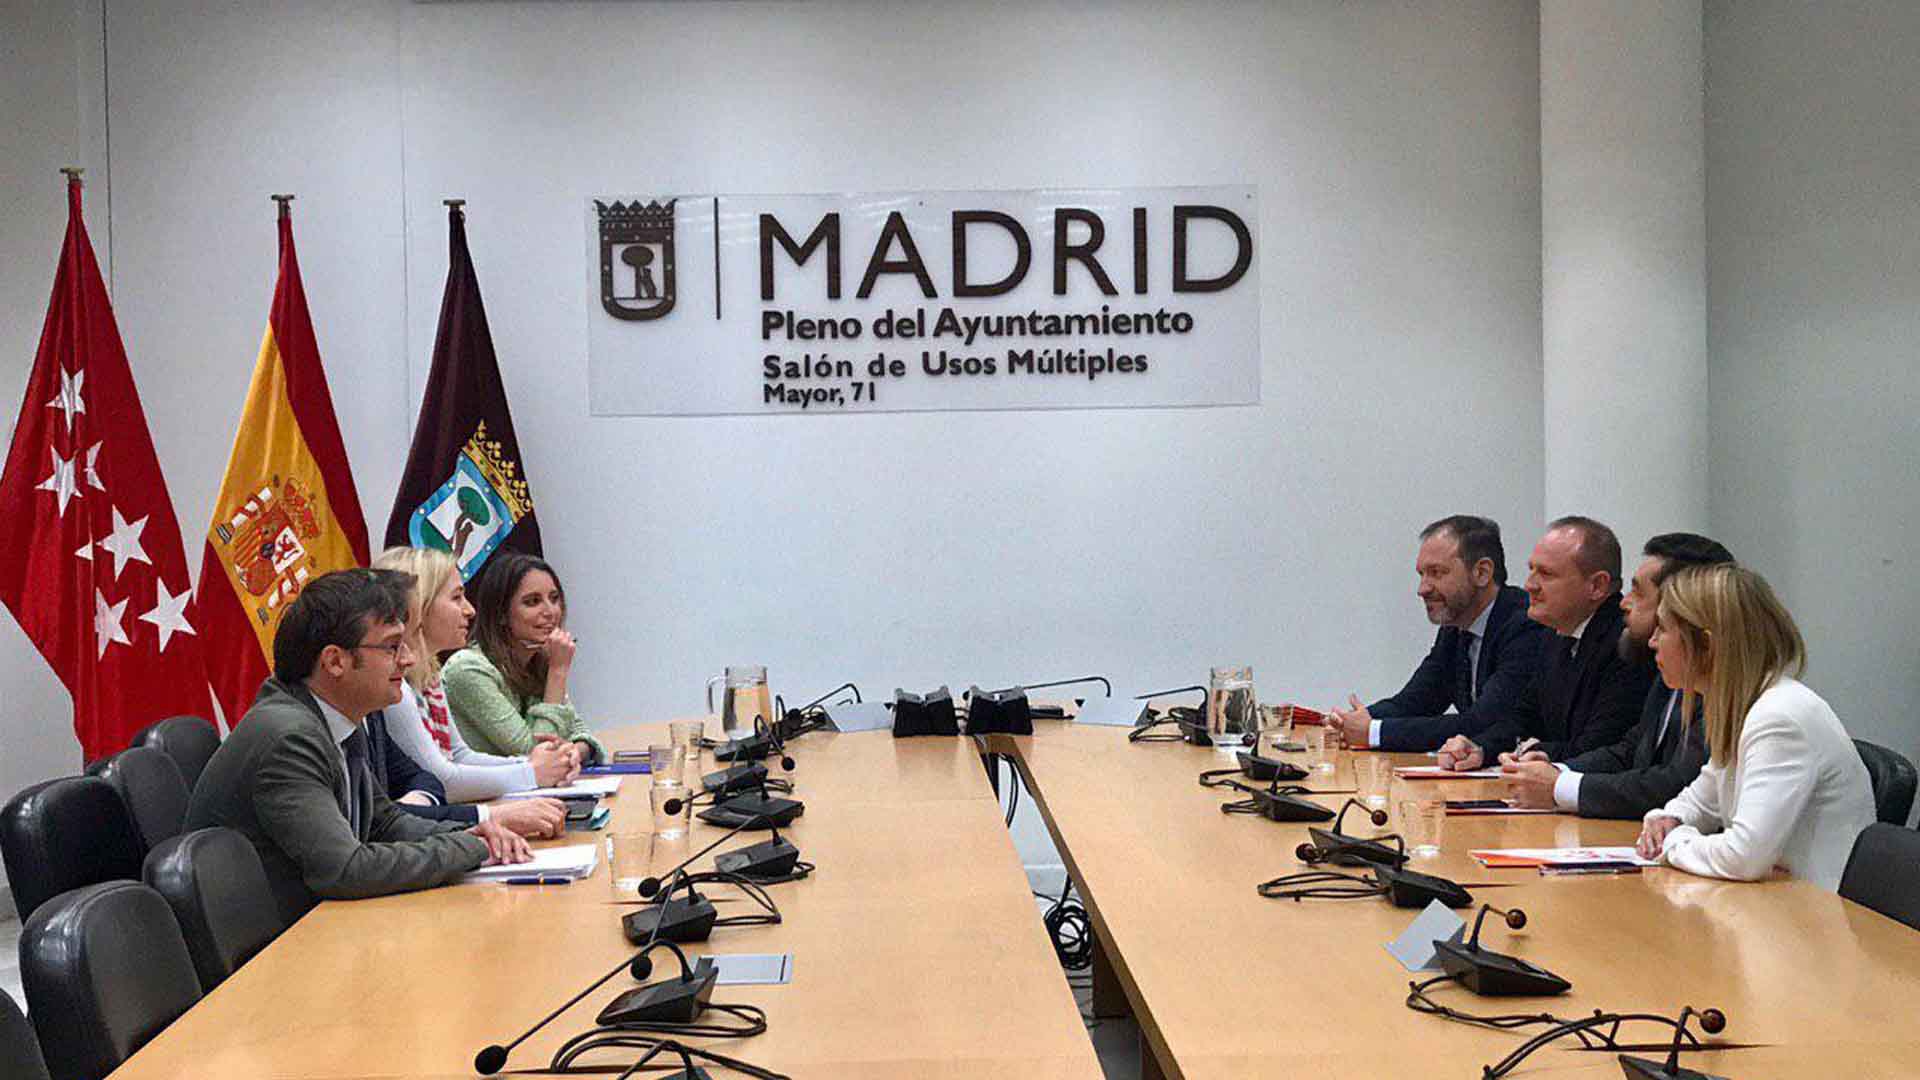 Ciudadanos ofrece al PP repartirse dos años la Alcaldía de Madrid y los populares lo rechazan